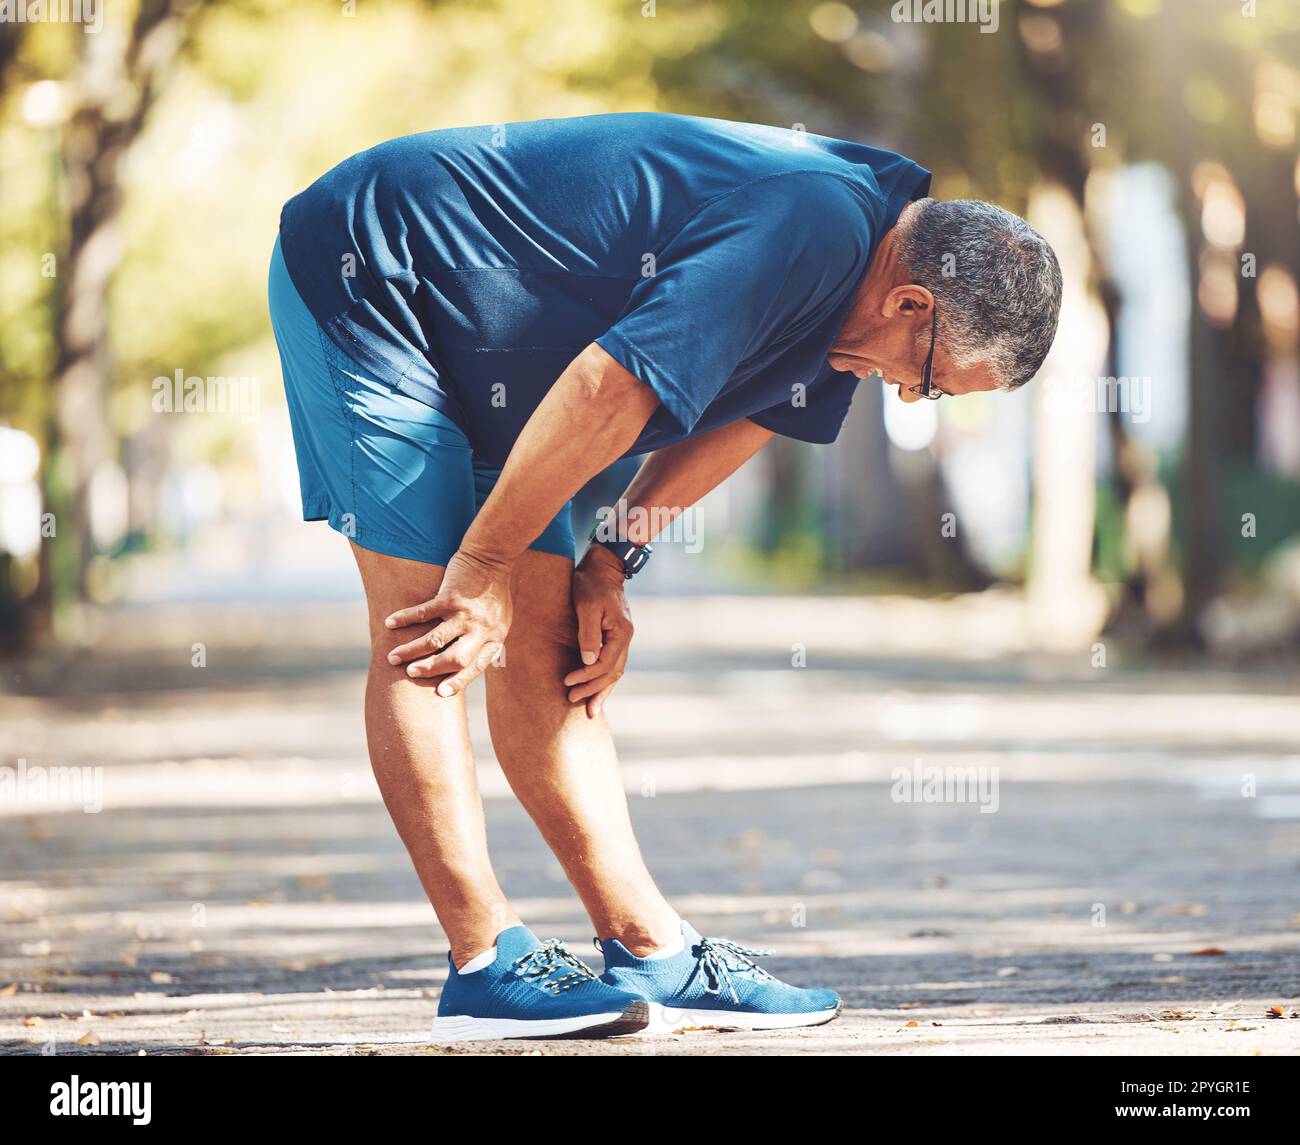 Esercizio, uomo anziano e stanco all'aperto, respirazione ed equilibrio per il benessere, la salute e la pensione. Uomo anziano, atleta e riposo per allenarsi, corridore ed esausto per fitness, allenamento e cardio Foto Stock